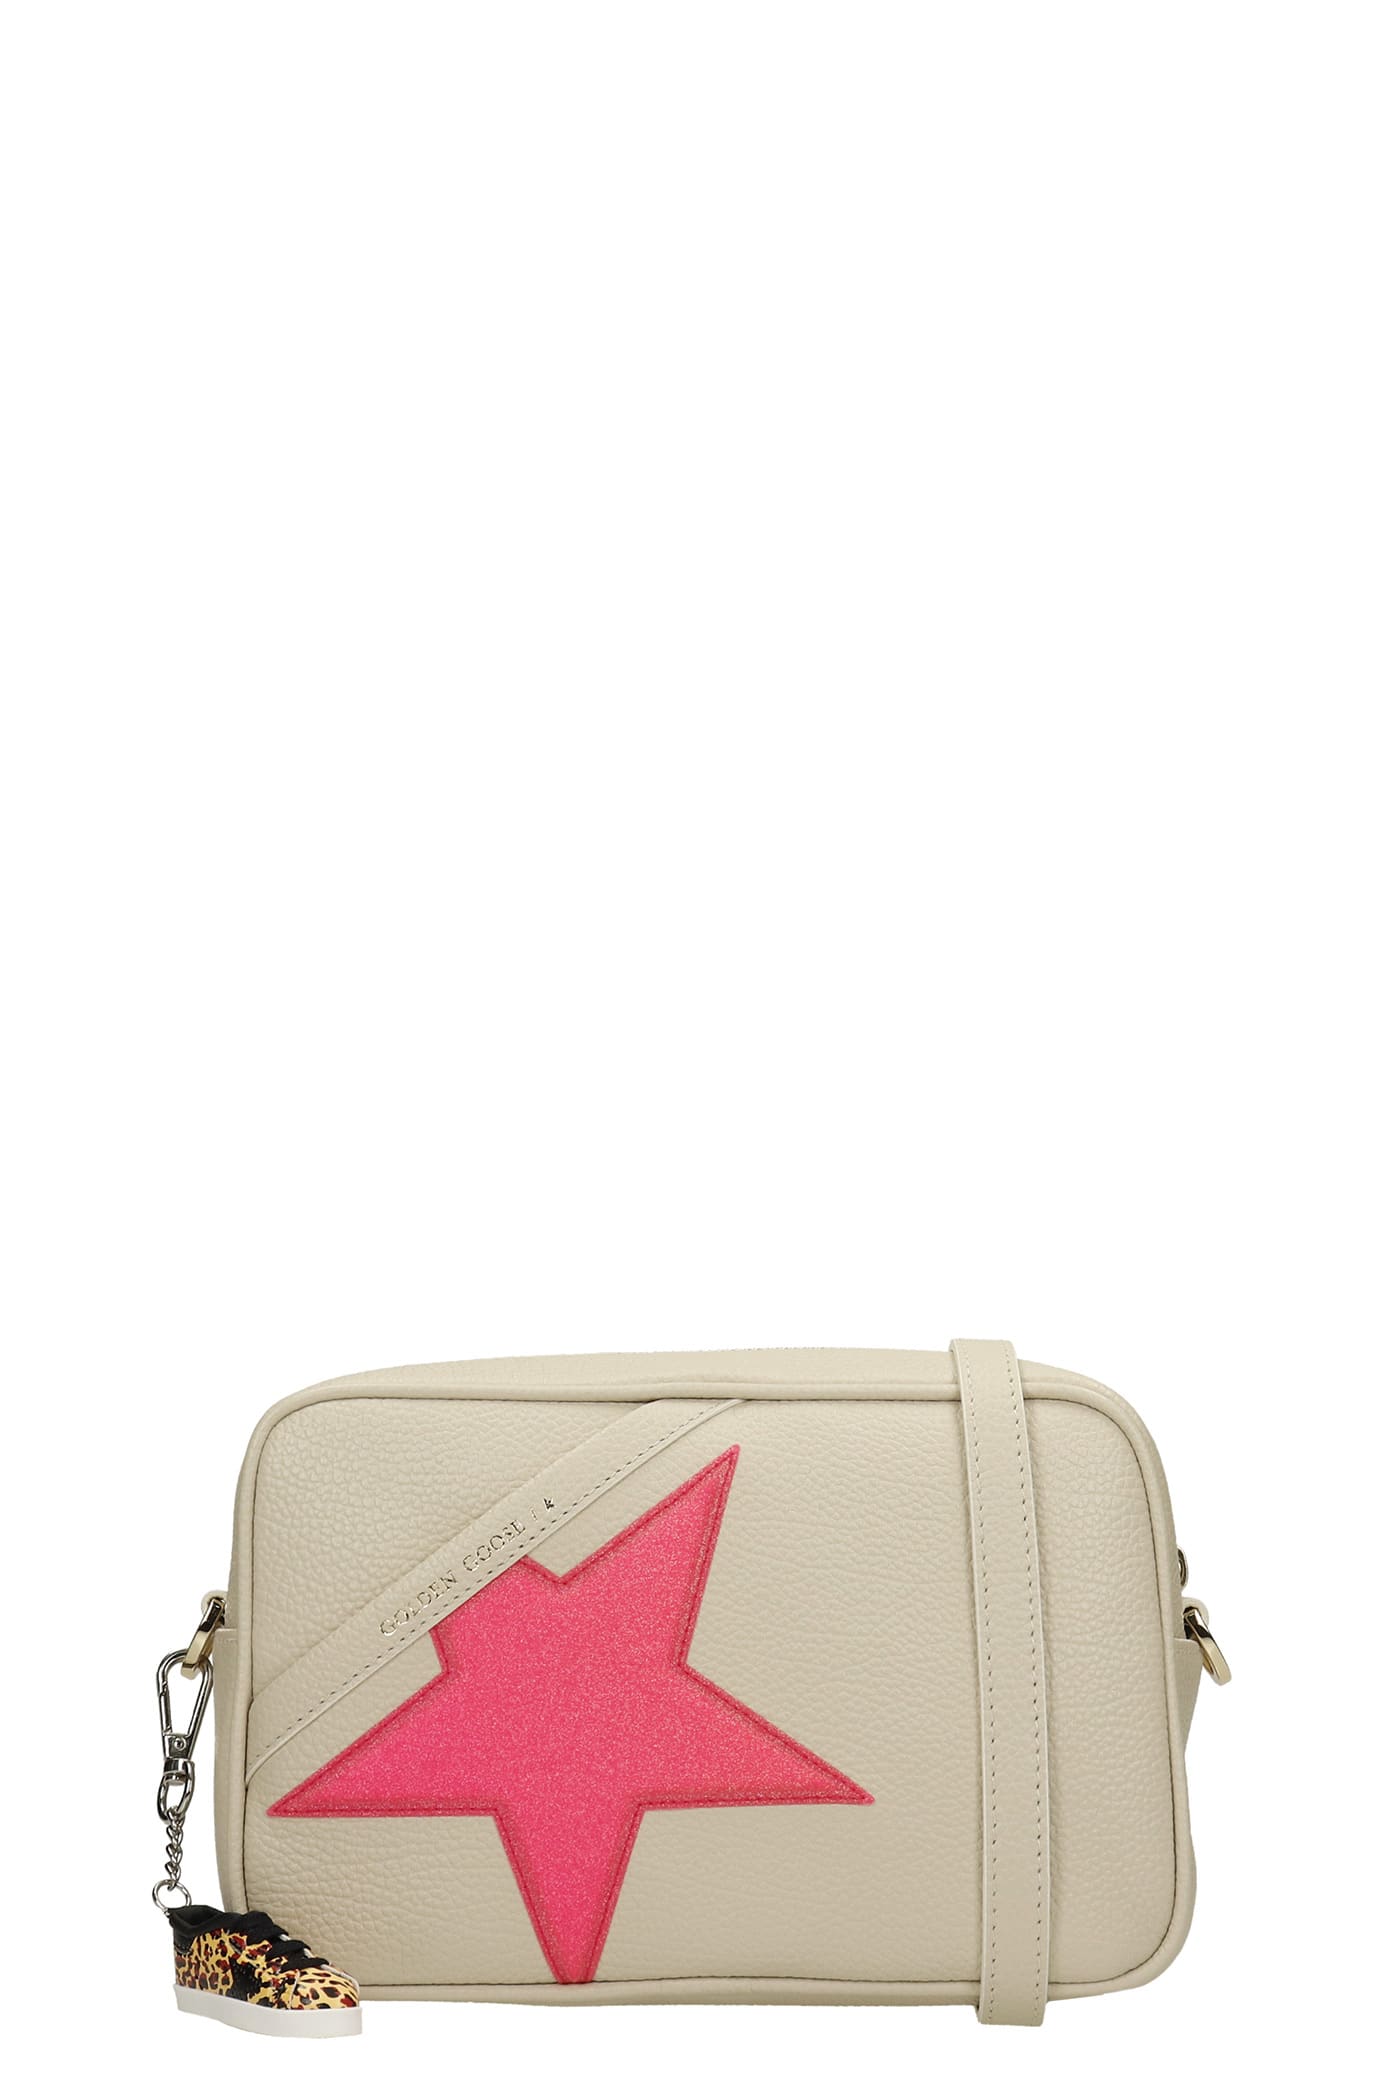 Golden Goose Star Bag Shoulder Bag In White Leather